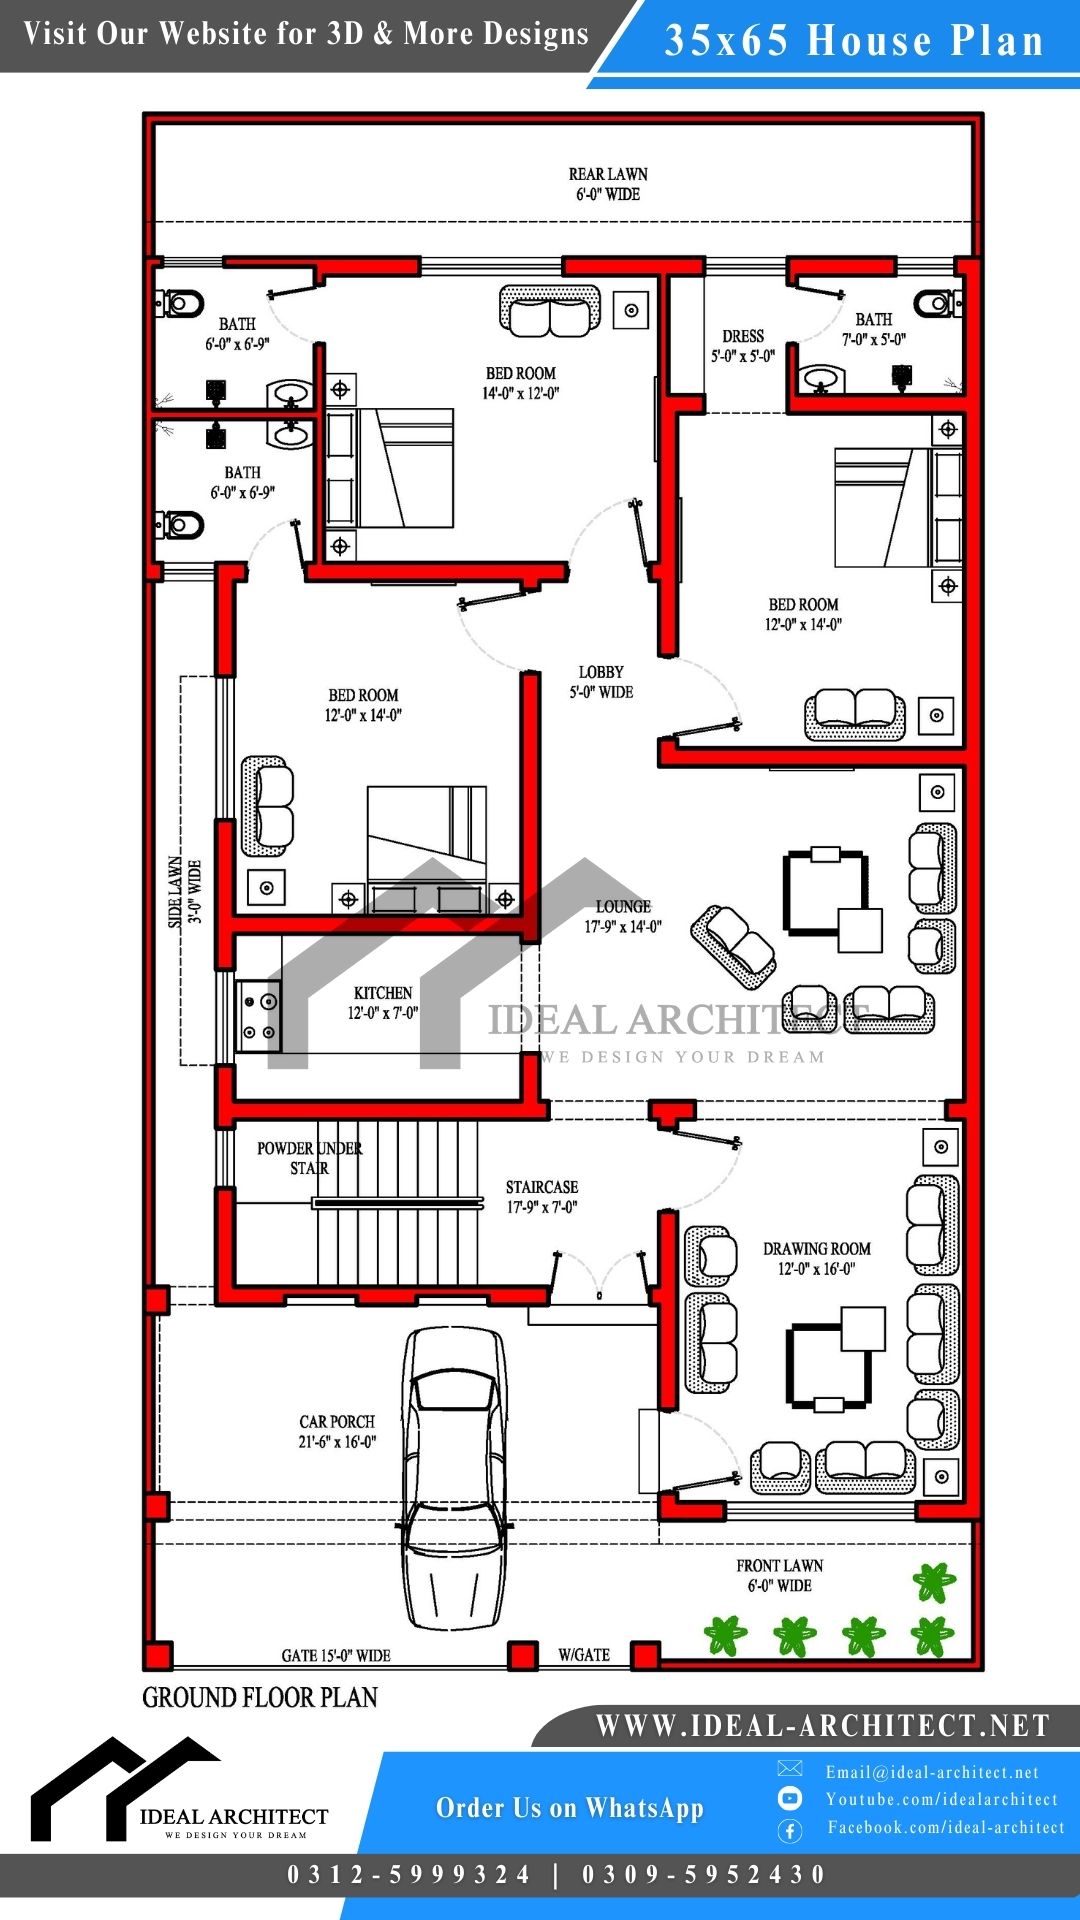 10 Marla House Plan | 35x65 House Plan